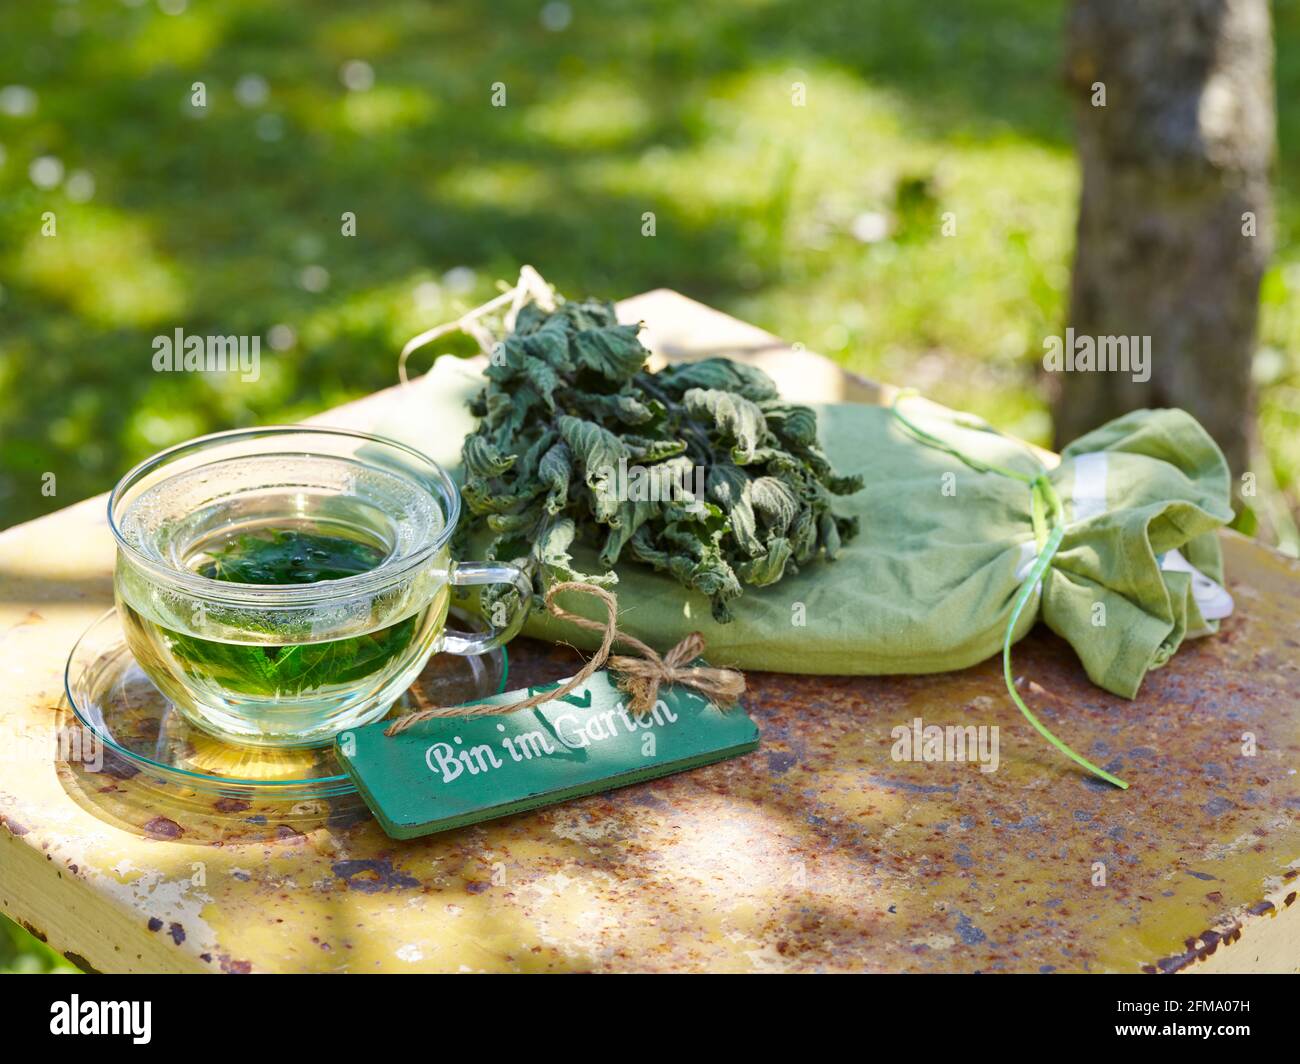 Brennnessel als Heilpflanze: Brennnesseltee aus getrockneten Brennnesselblättern in einem Teeglas Stockfoto